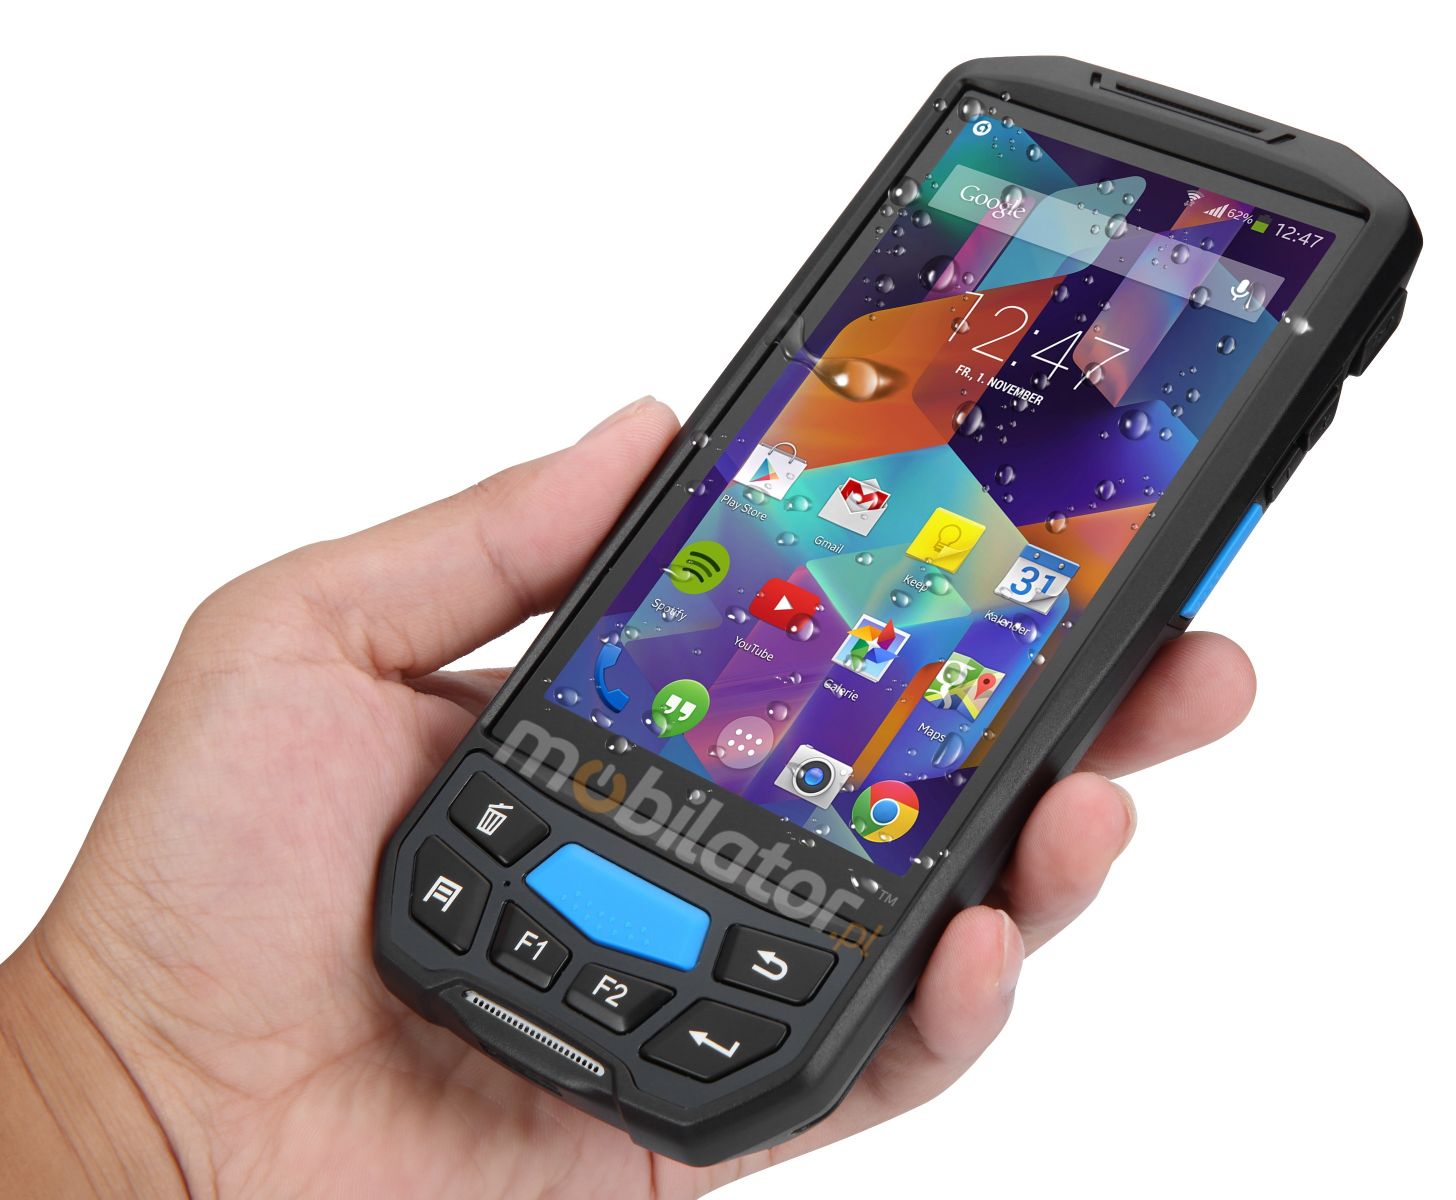 Nowoczesny Wzmocniony Odporny Mobilny Kolektor Danych MobiPad U90 Android WiFi HF